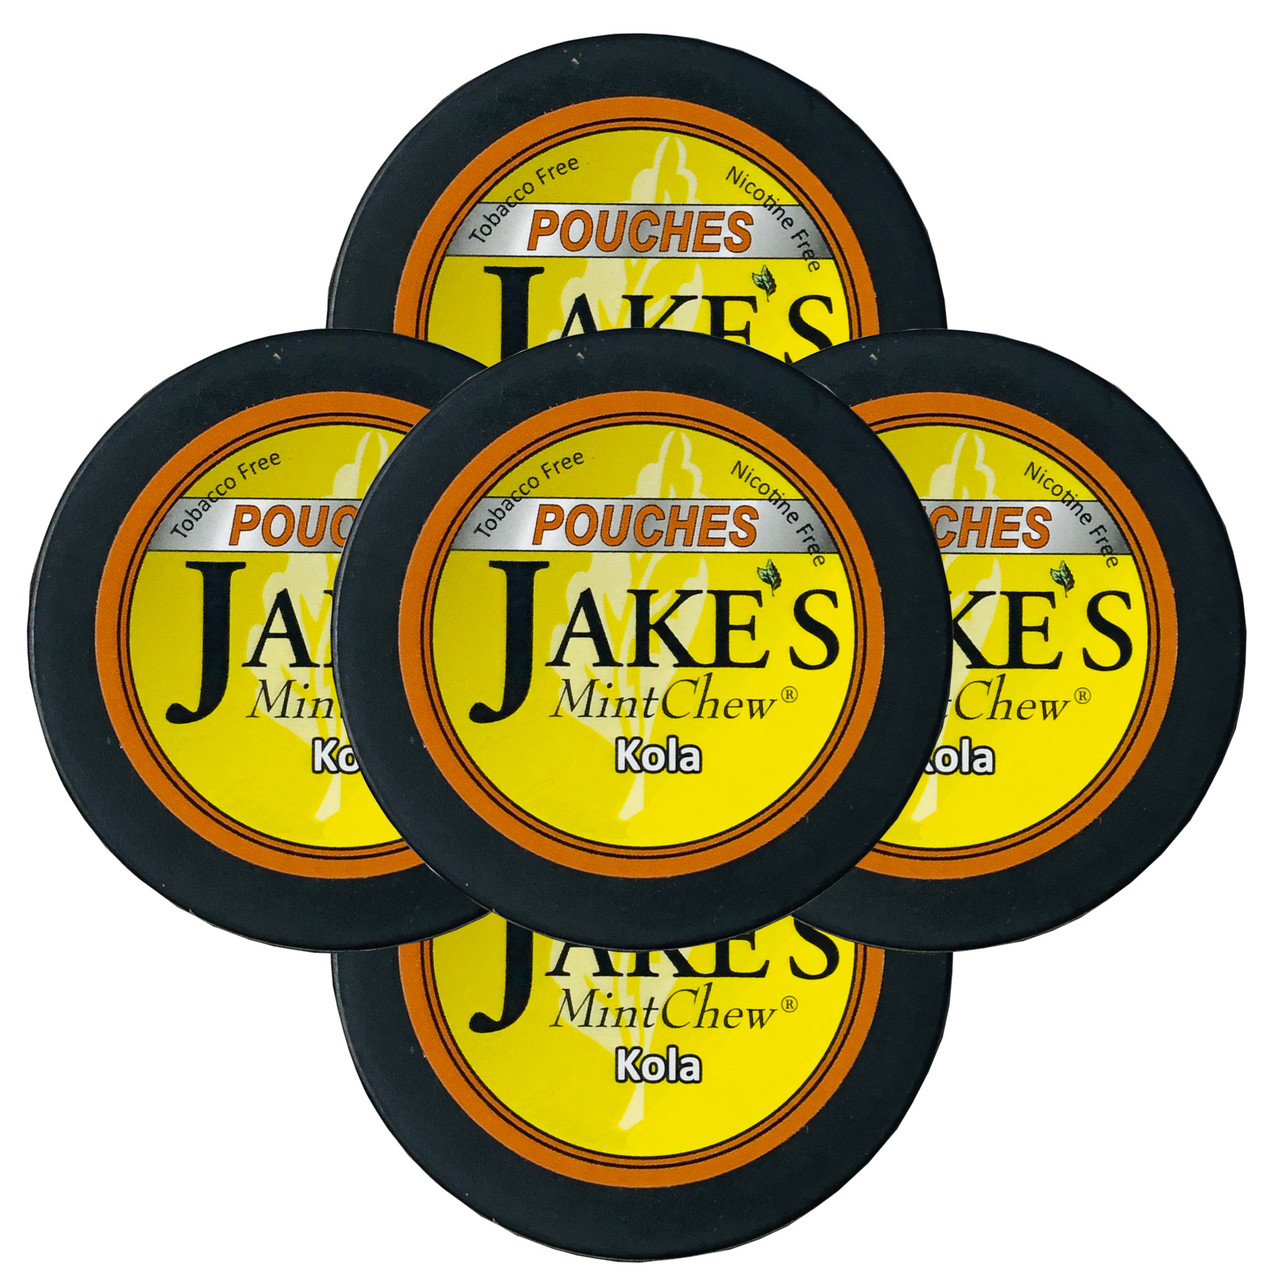 Jake's Mint Chew Pouches Kola 5 Cans